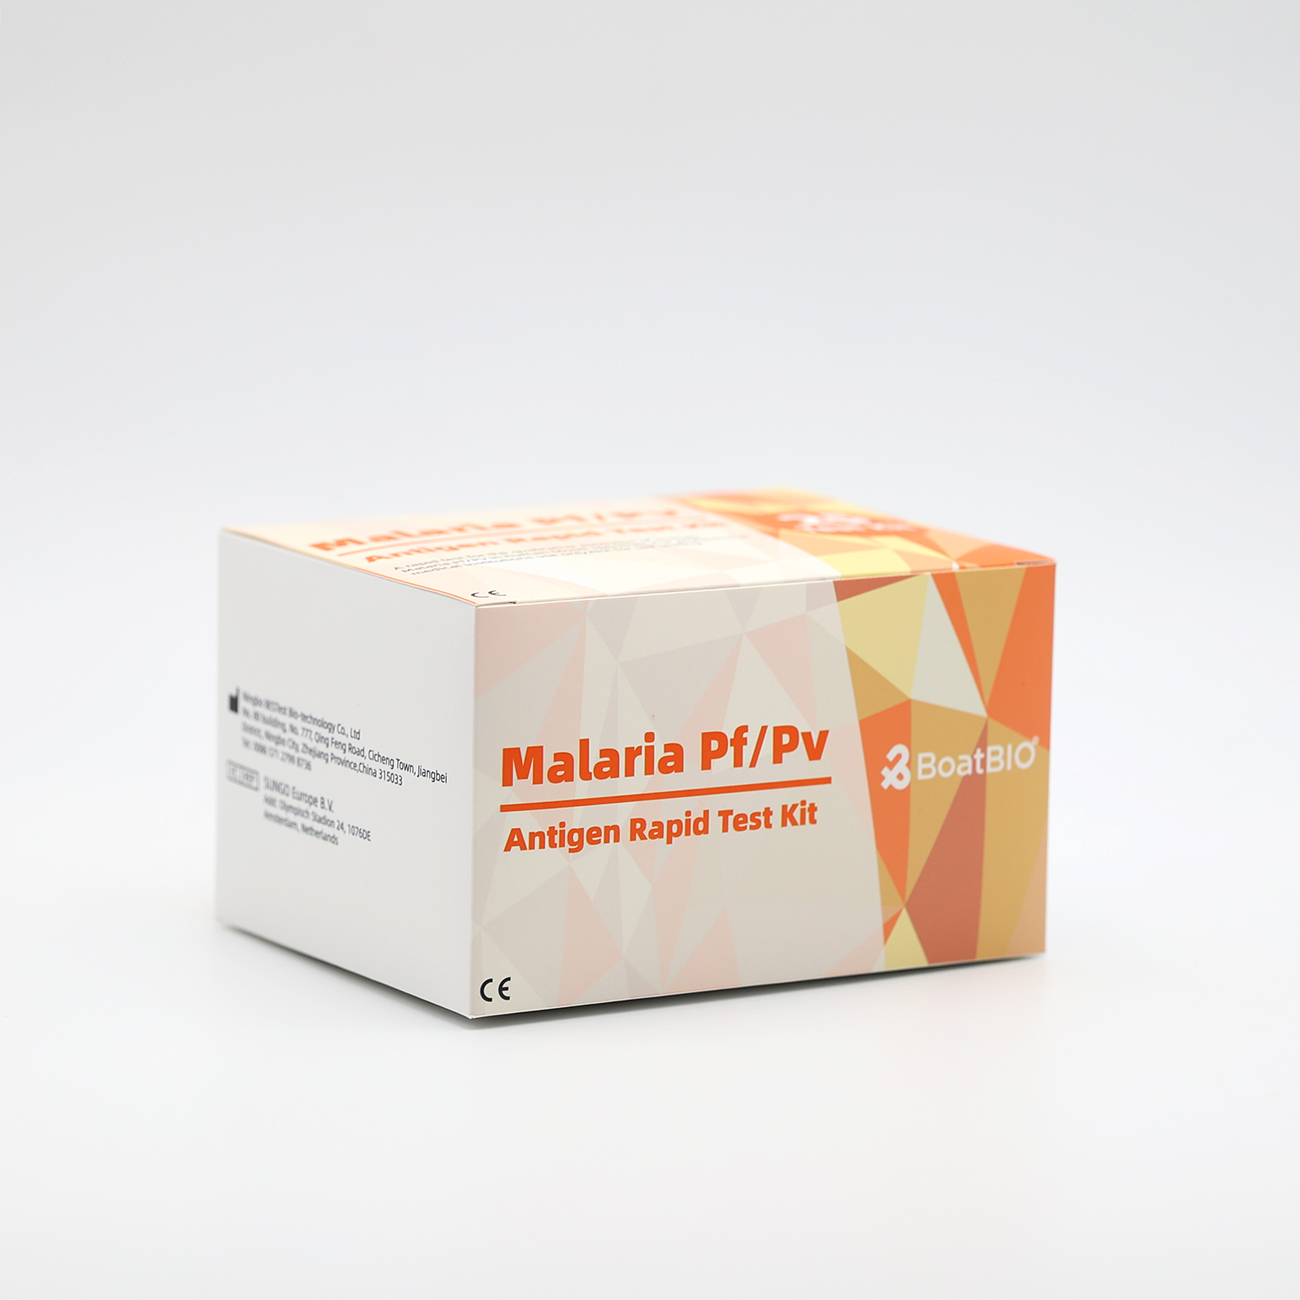 Malaria Pf/Pv Antigen Rapid Test Kit (Colloidal Gold)